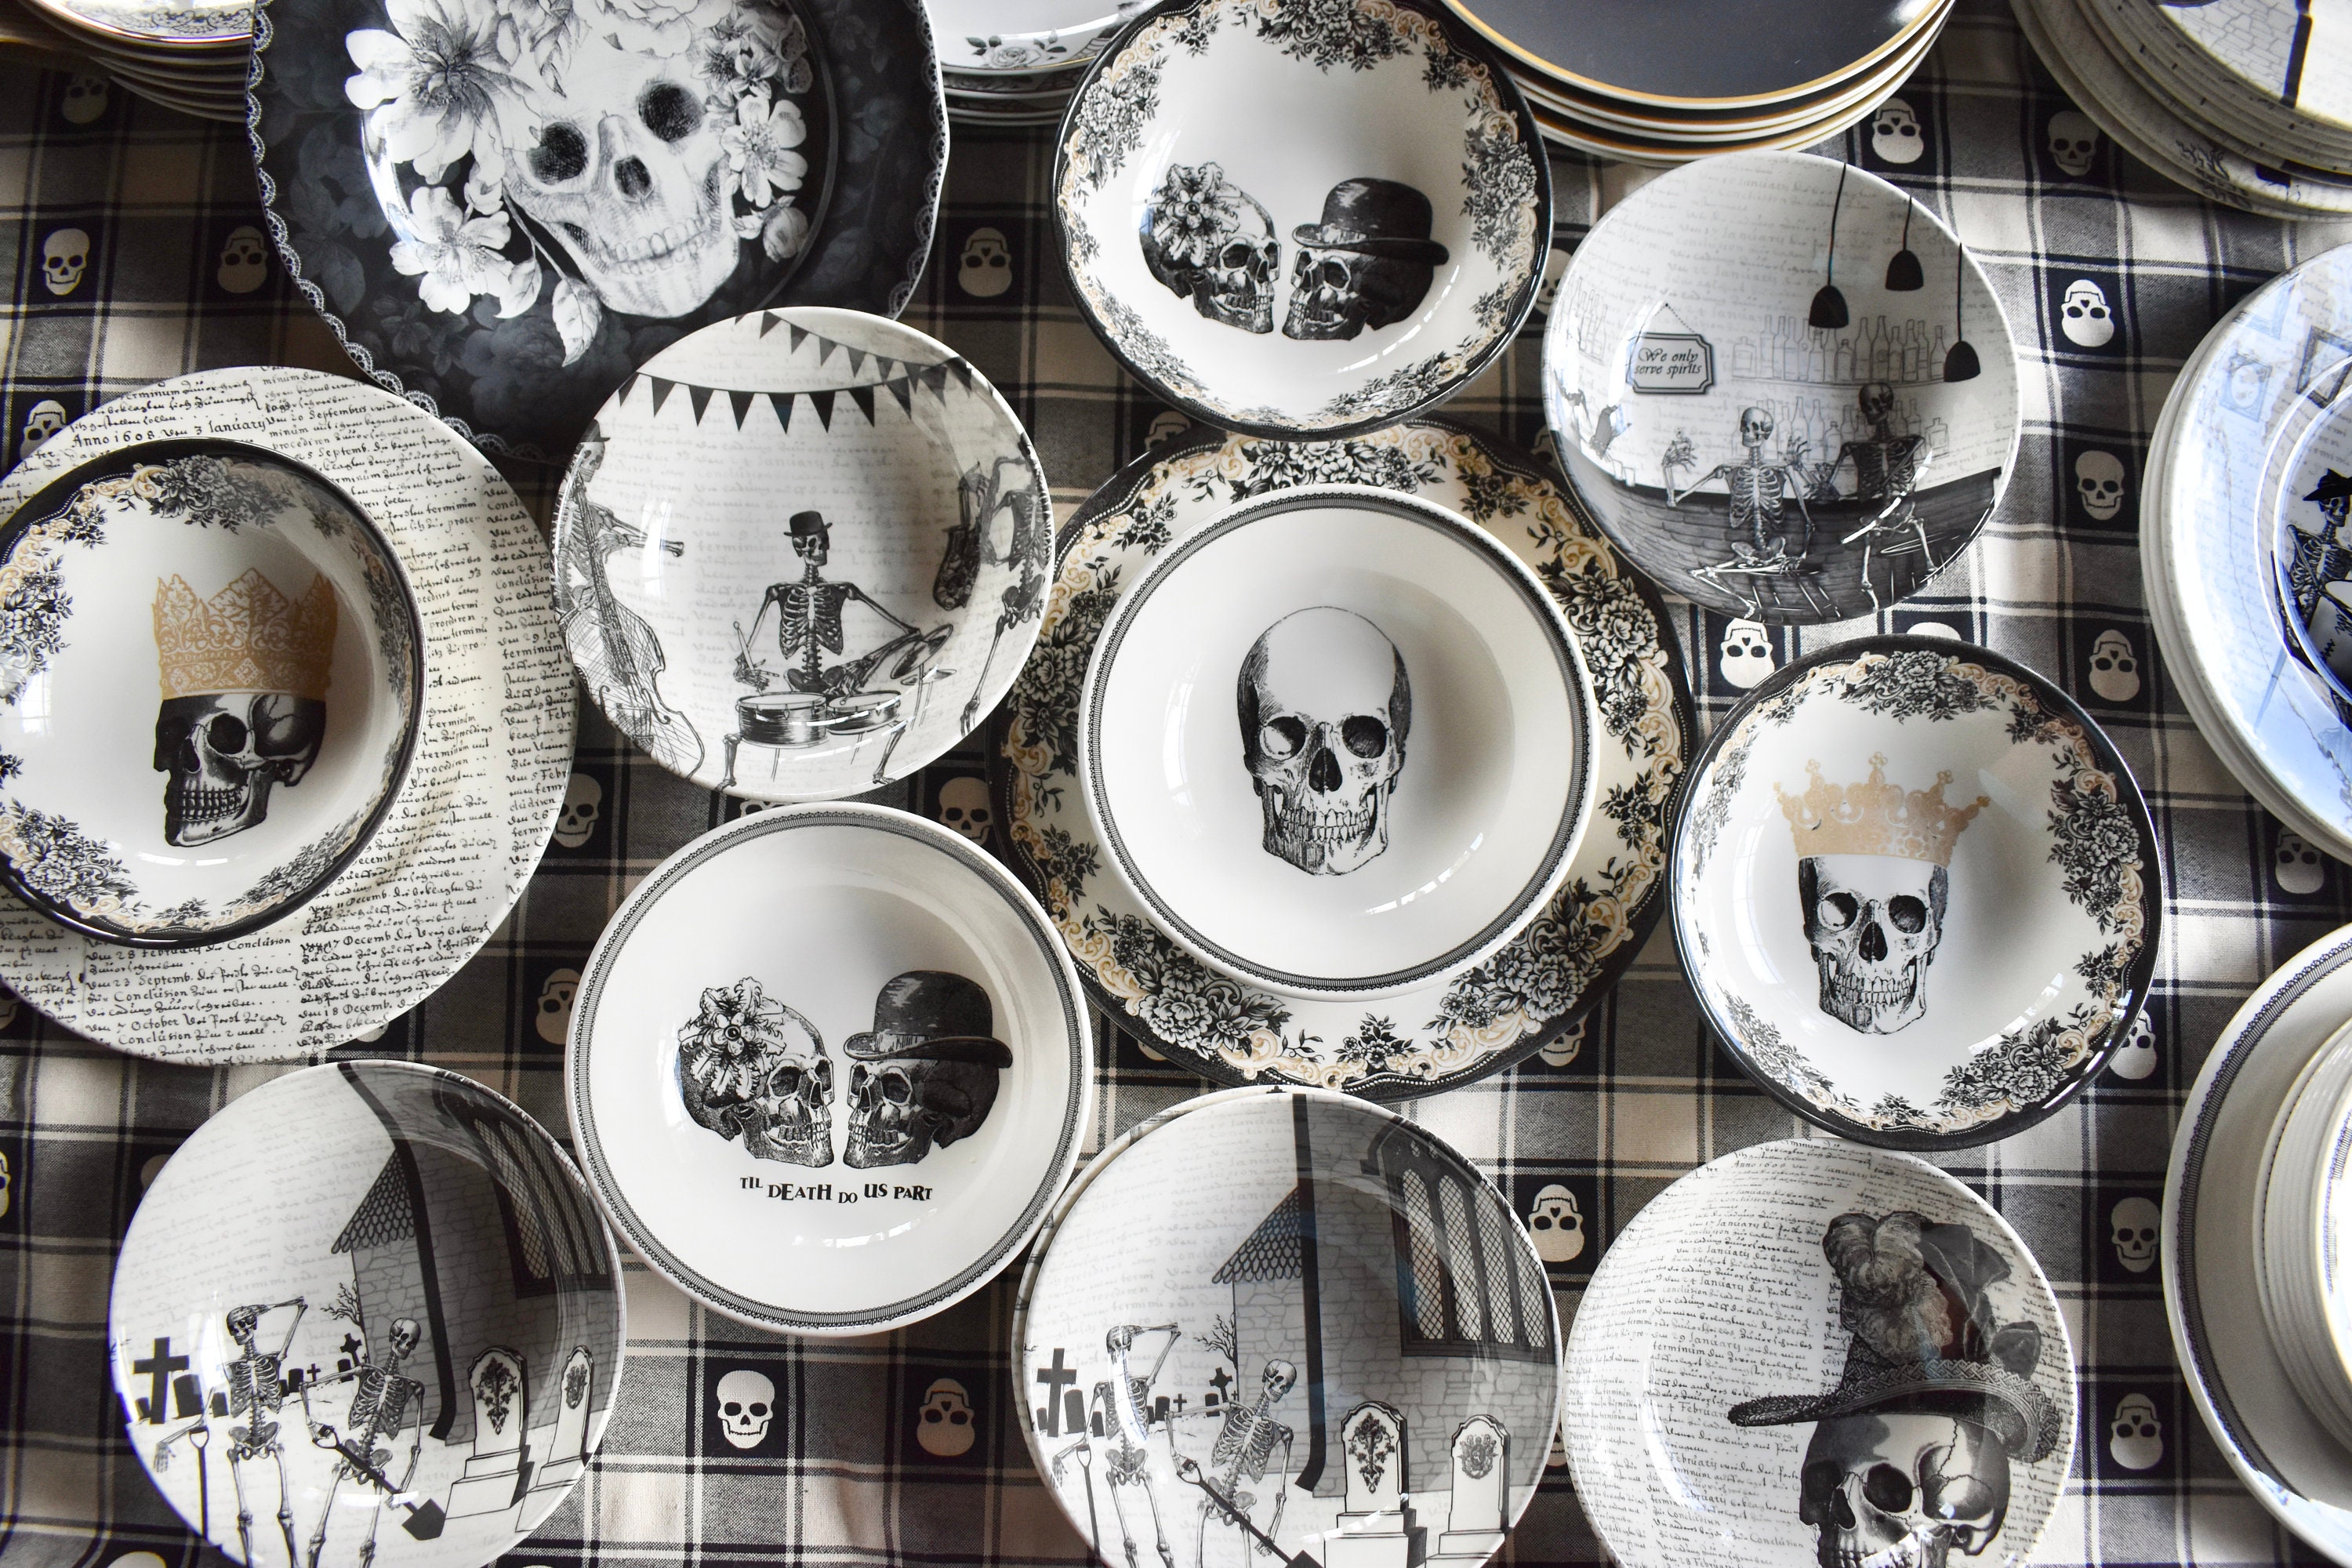 Skull Bowls Mismatched China Porcelain Plates. Skeletons Goth